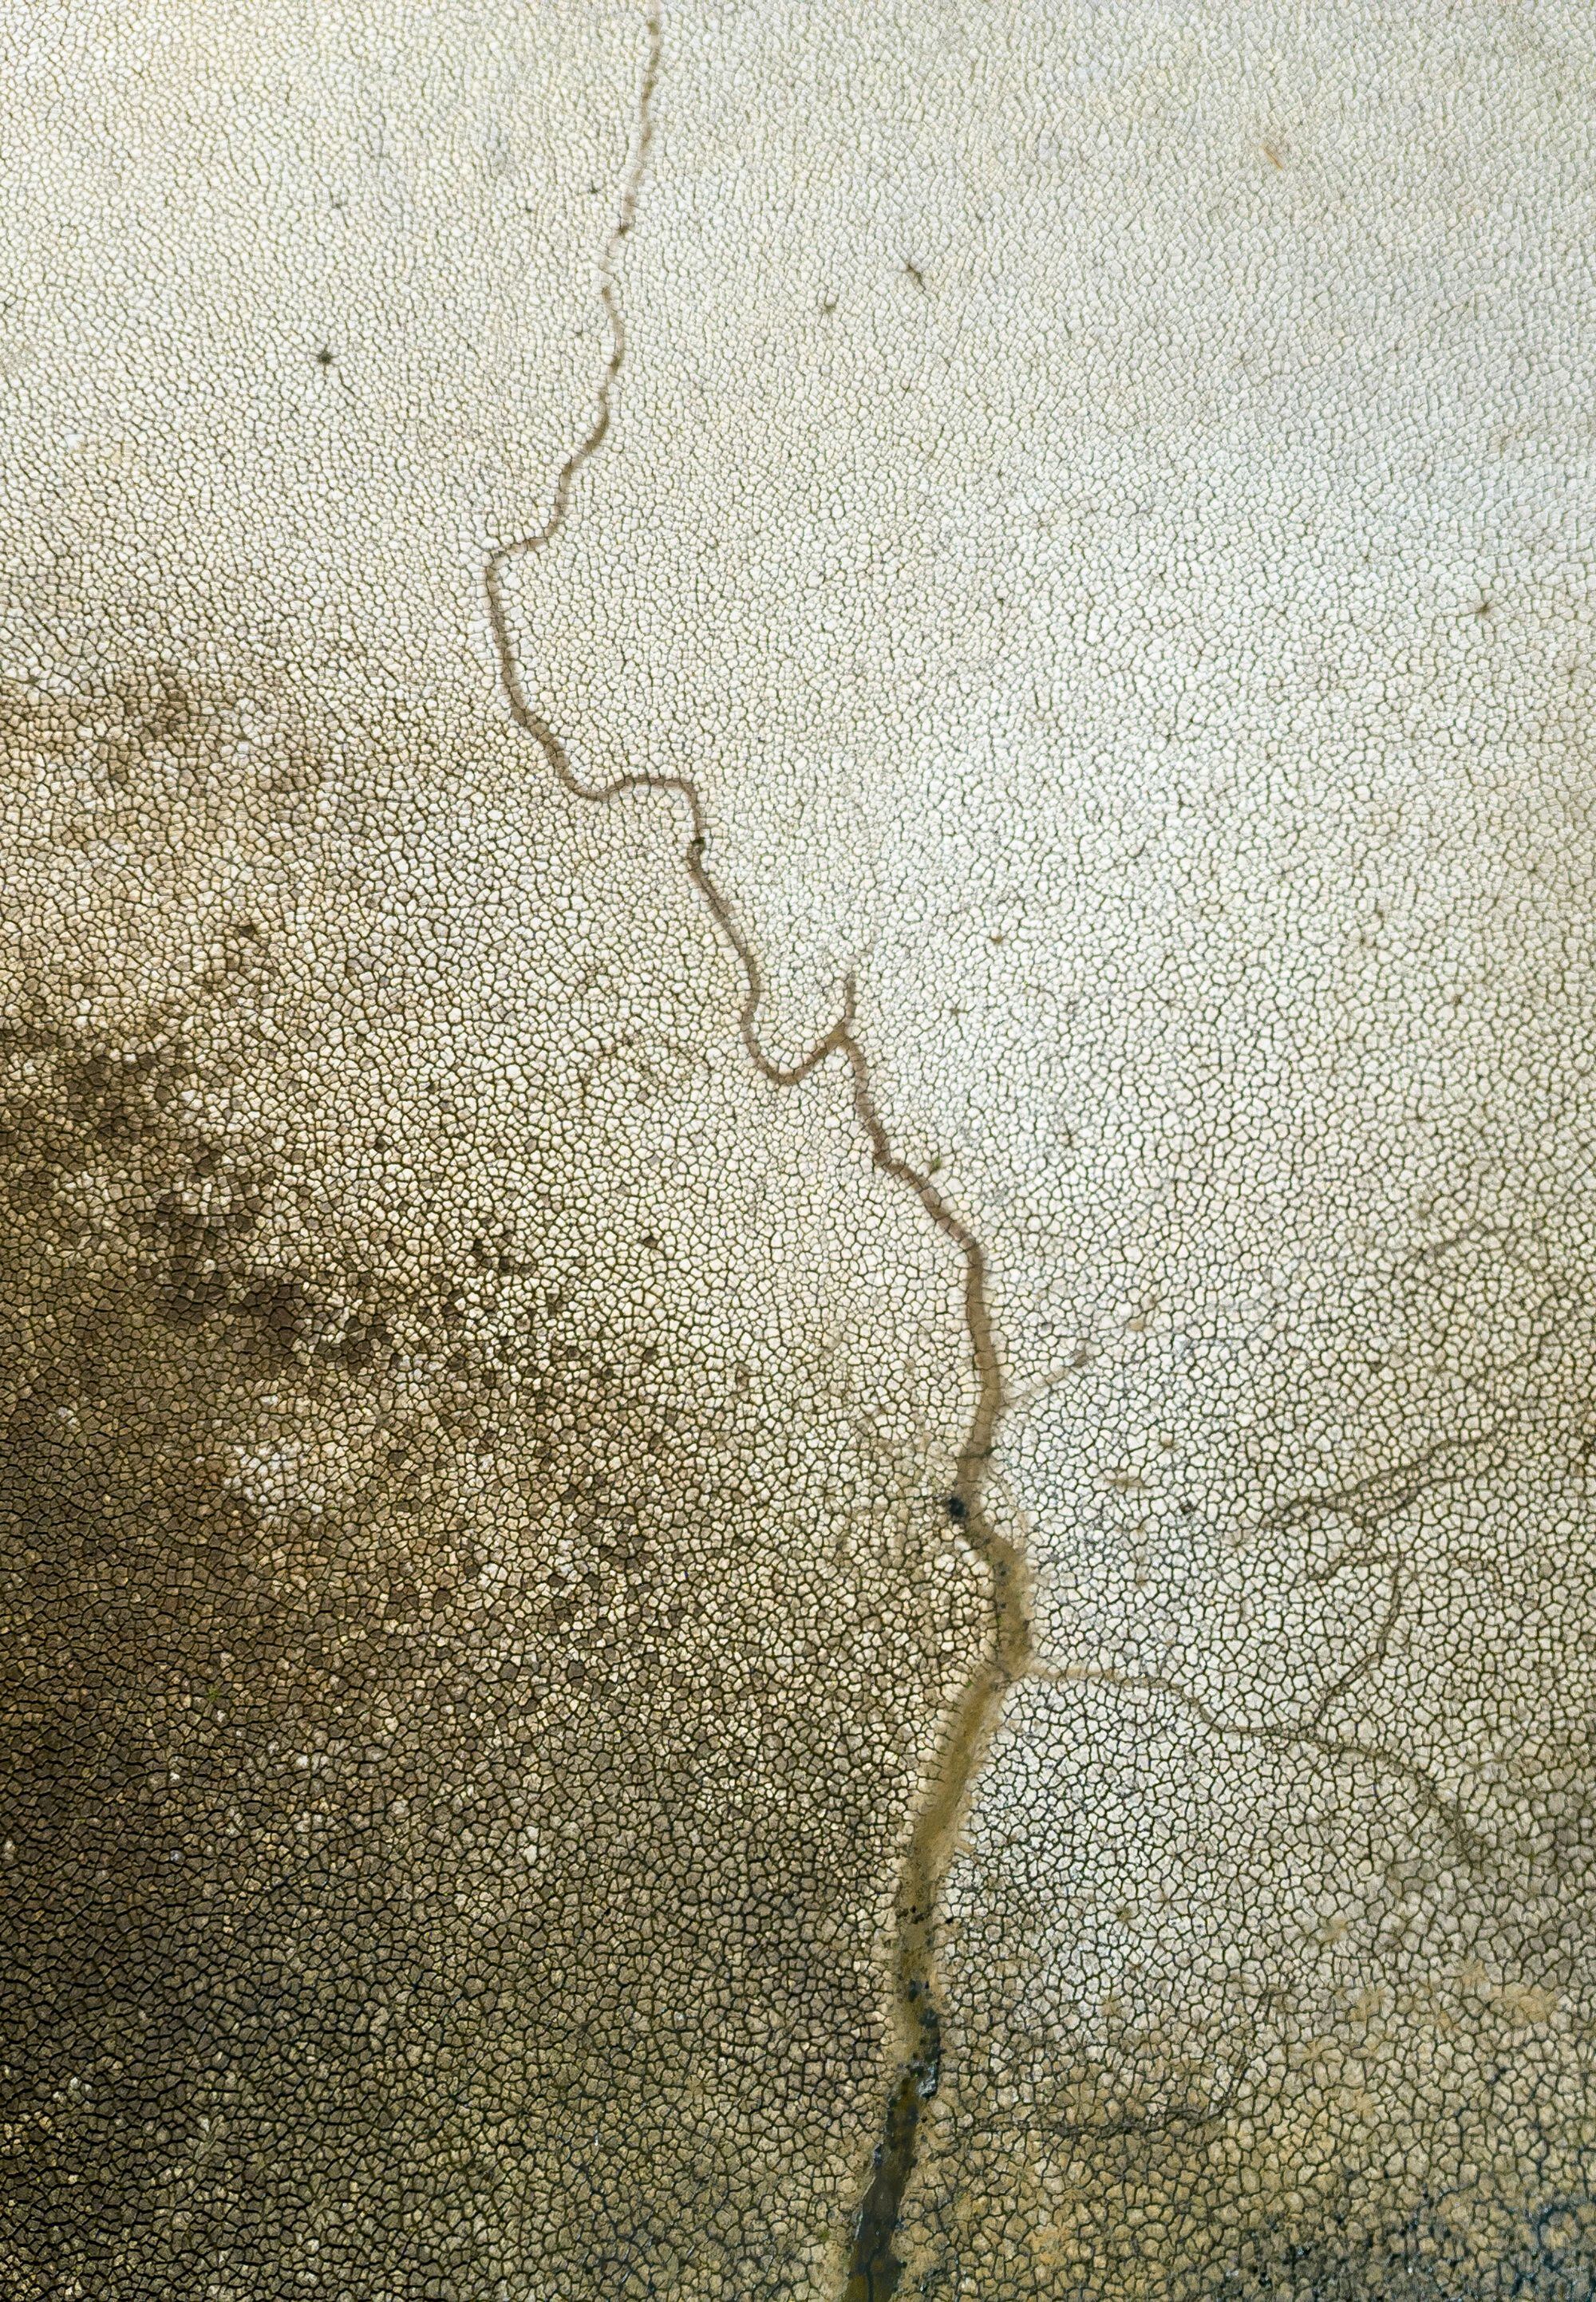 Detalle del suelo resquebrajado de la laguna de Santa Olalla.